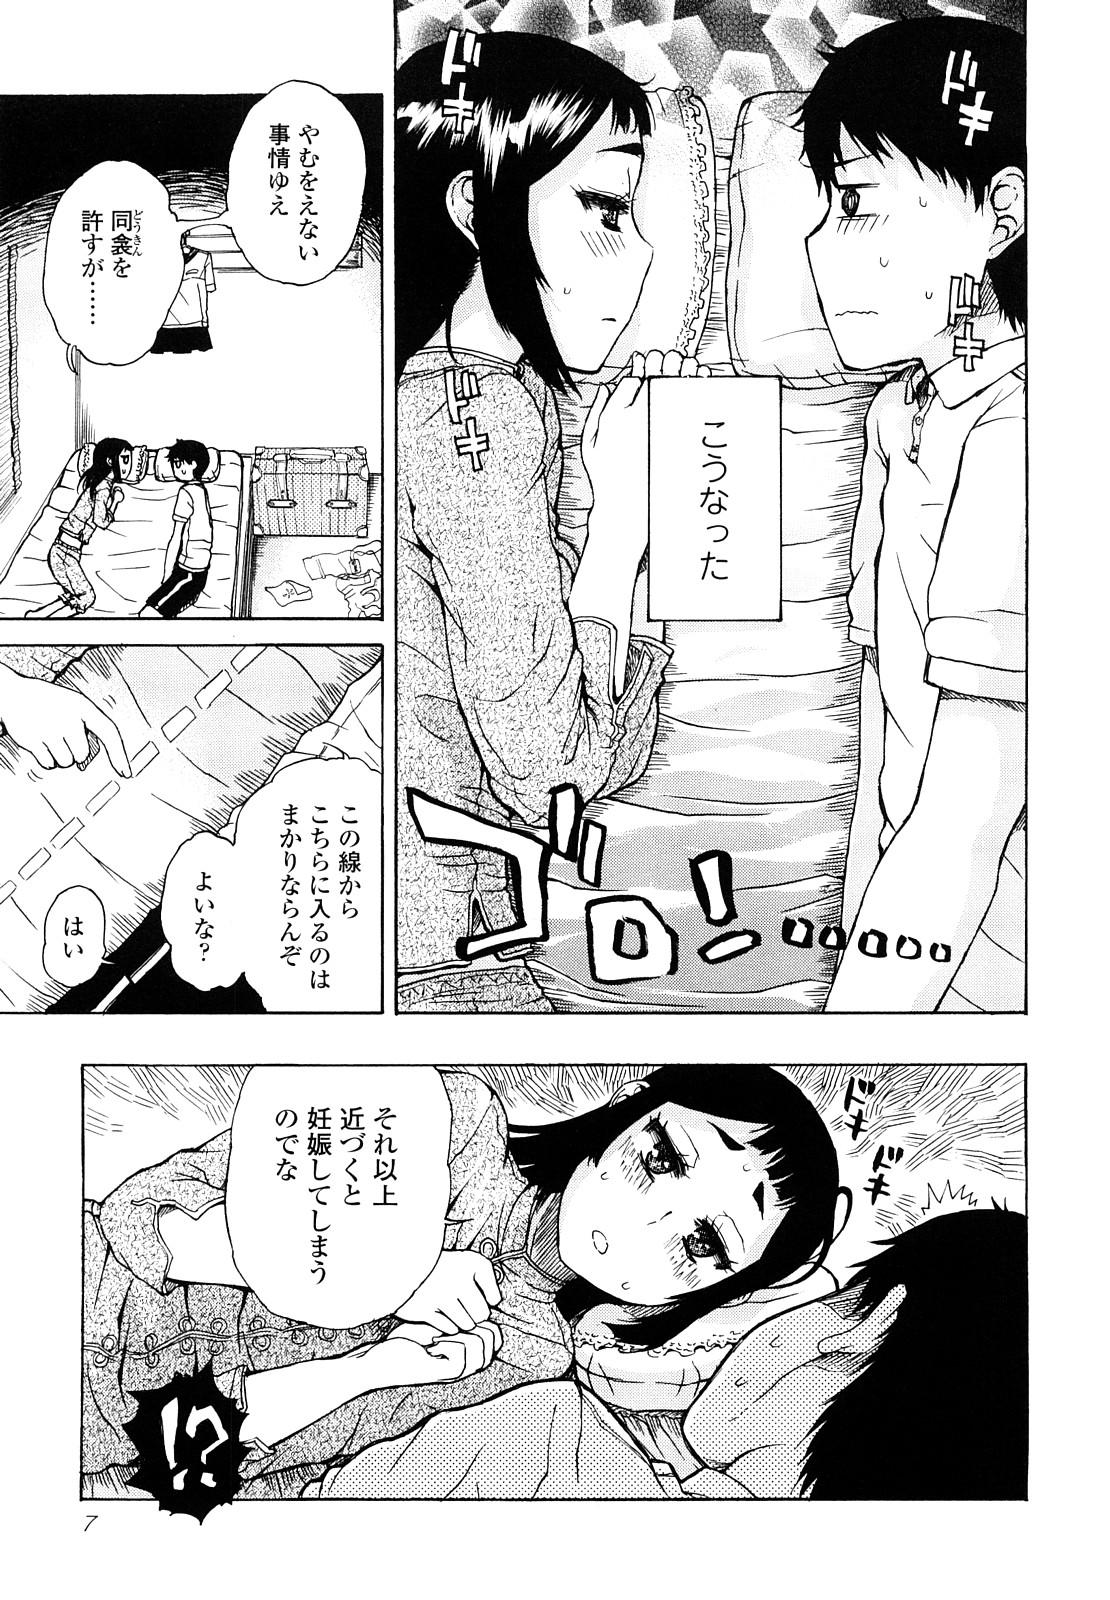 Sofa Daisuke-kun no Hijitsuzai Bishoujo Plus Amature Allure - Page 7